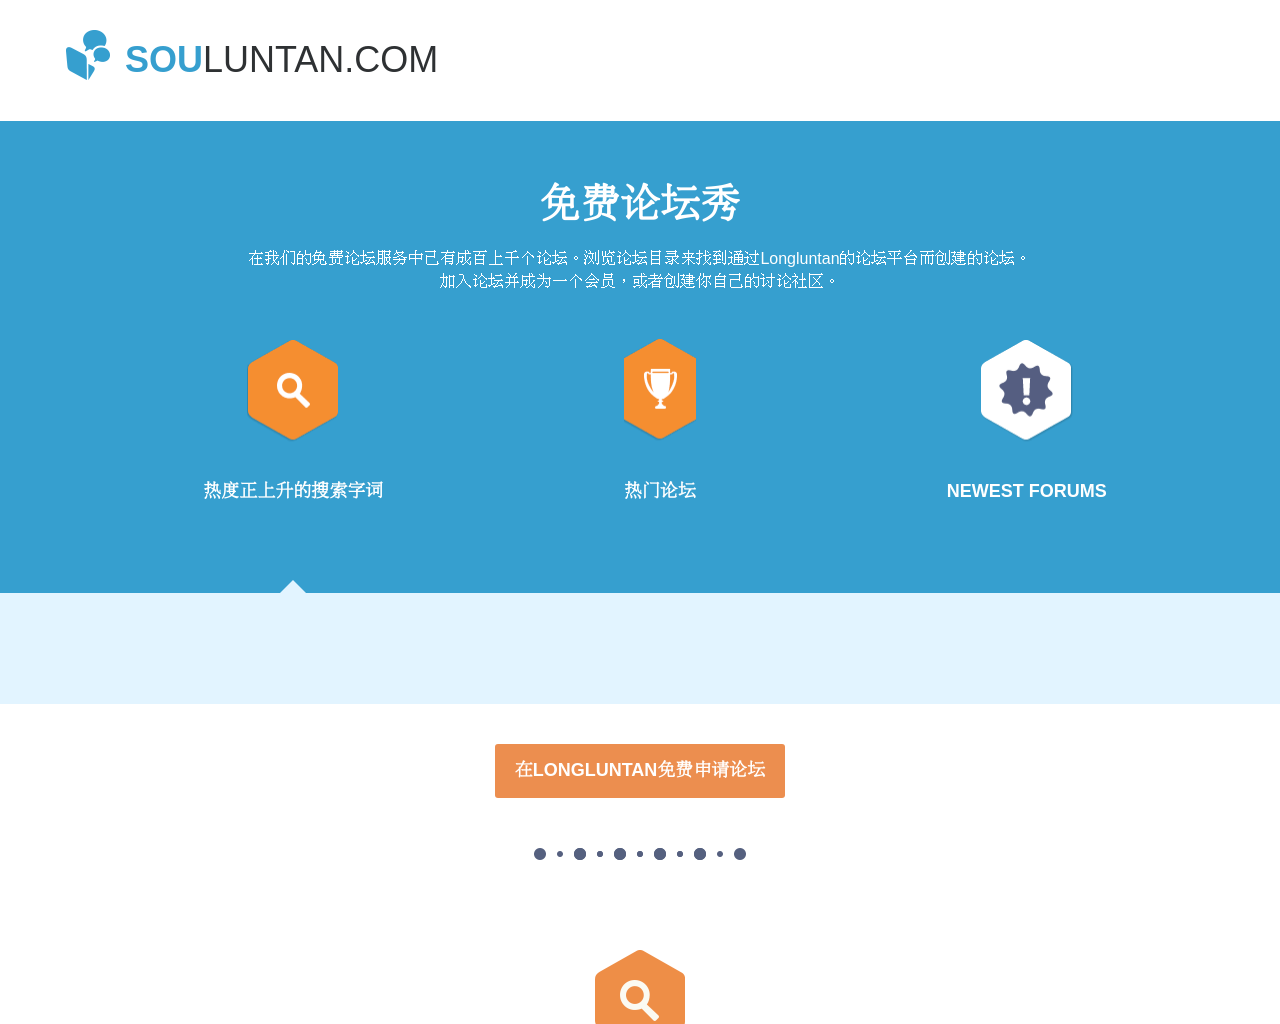 souluntan.com